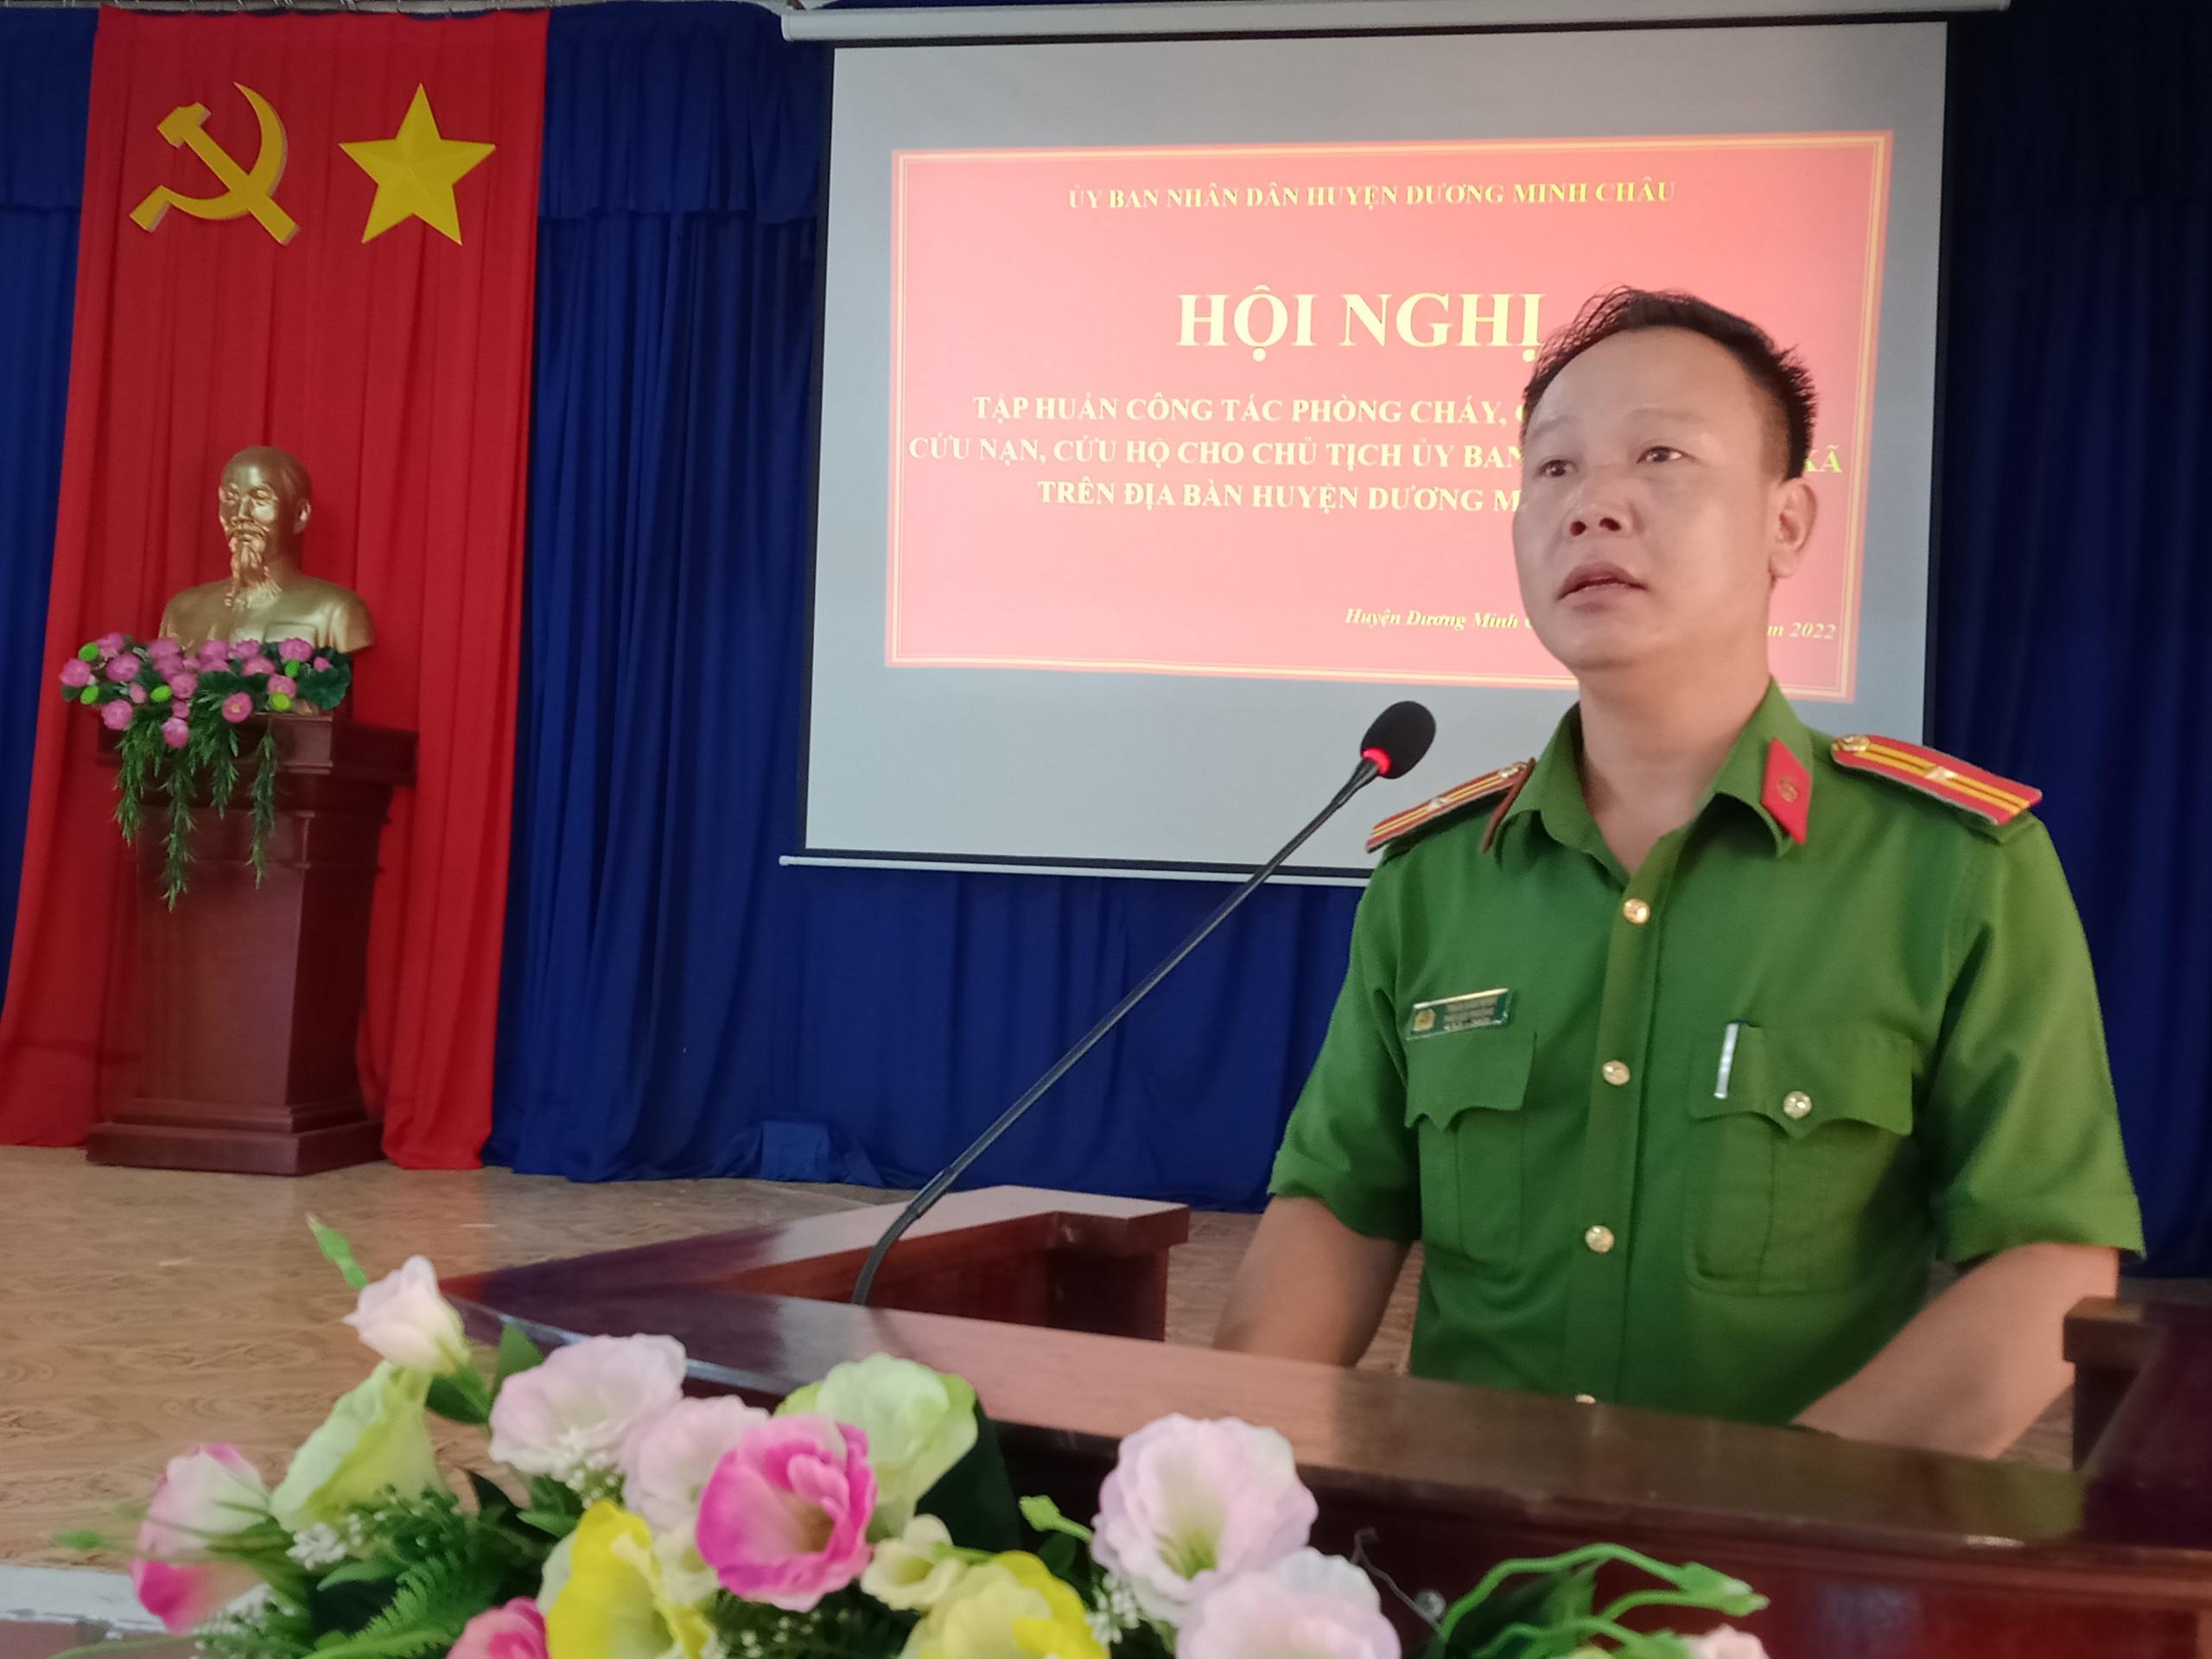 Công an huyện Dương Minh Châu:  Tập huấn công tác phòng cháy, chữa cháy và cứu nạn, cứu hộ